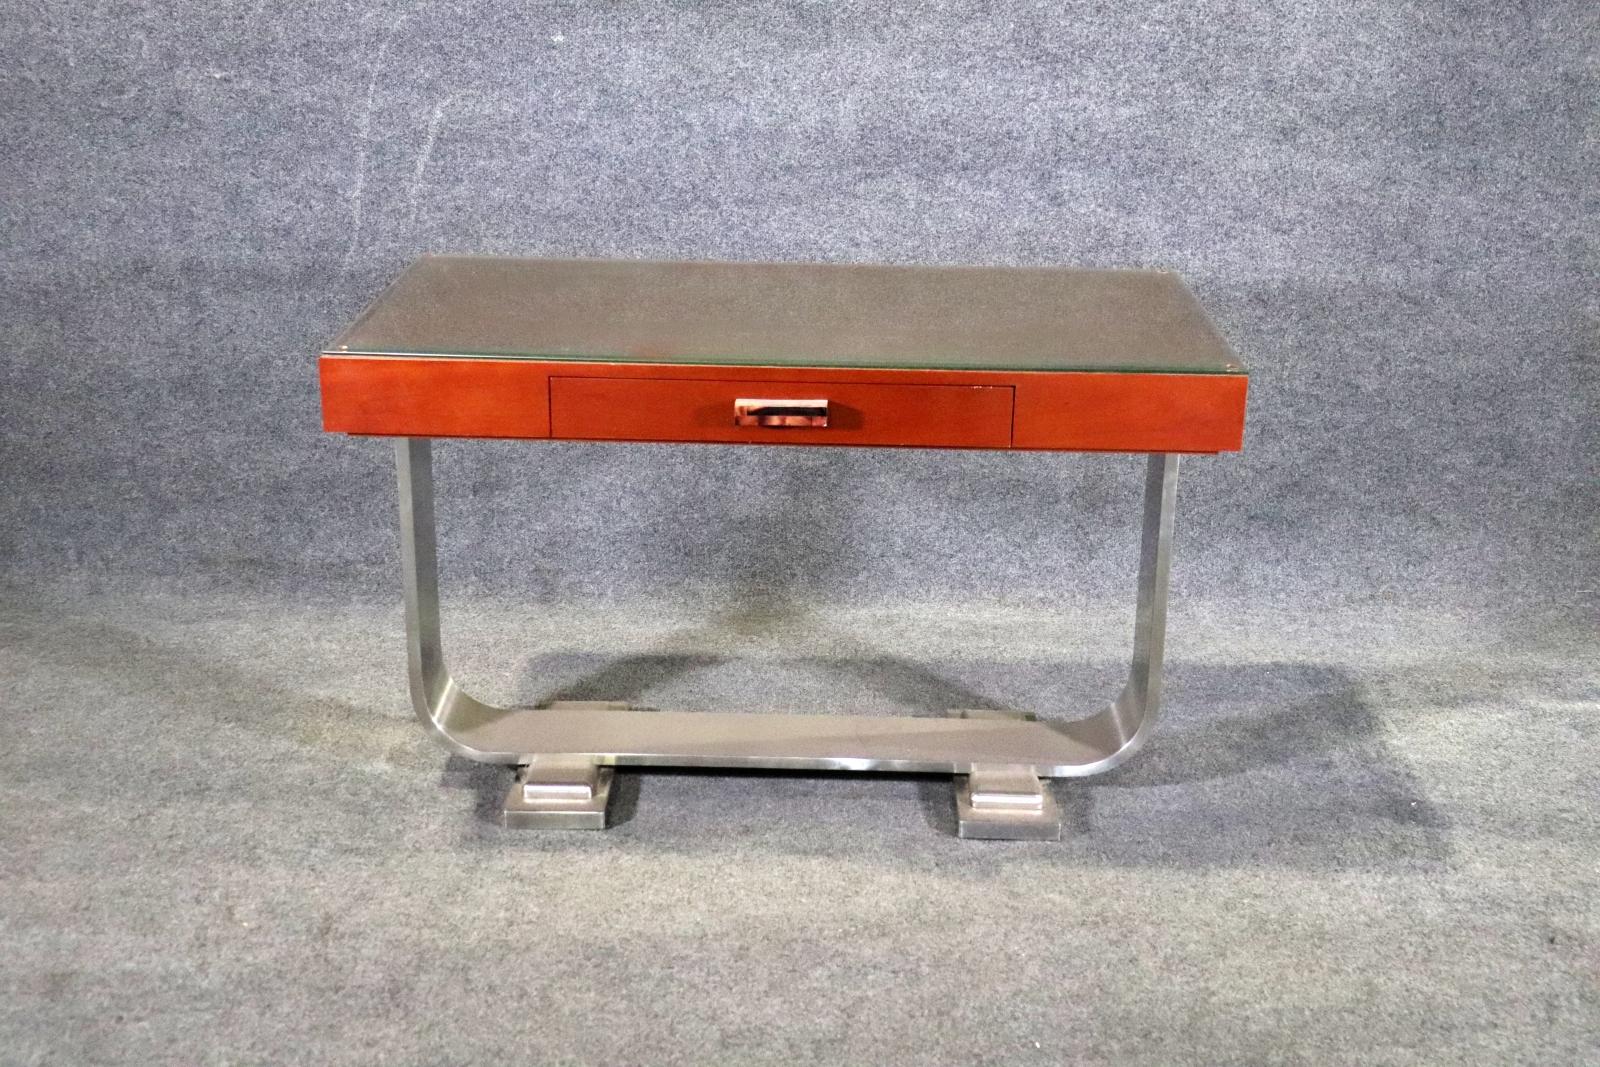 Dieser Schreibtisch verfügt über eine Lederplatte mit Glasschutz auf einem Aluminiumsockel. Einzelne Schublade mit dekorativem Acrylgriff. Kann auch als Konsolentisch verwendet werden.
Bitte bestätigen Sie den Standort NY oder NJ